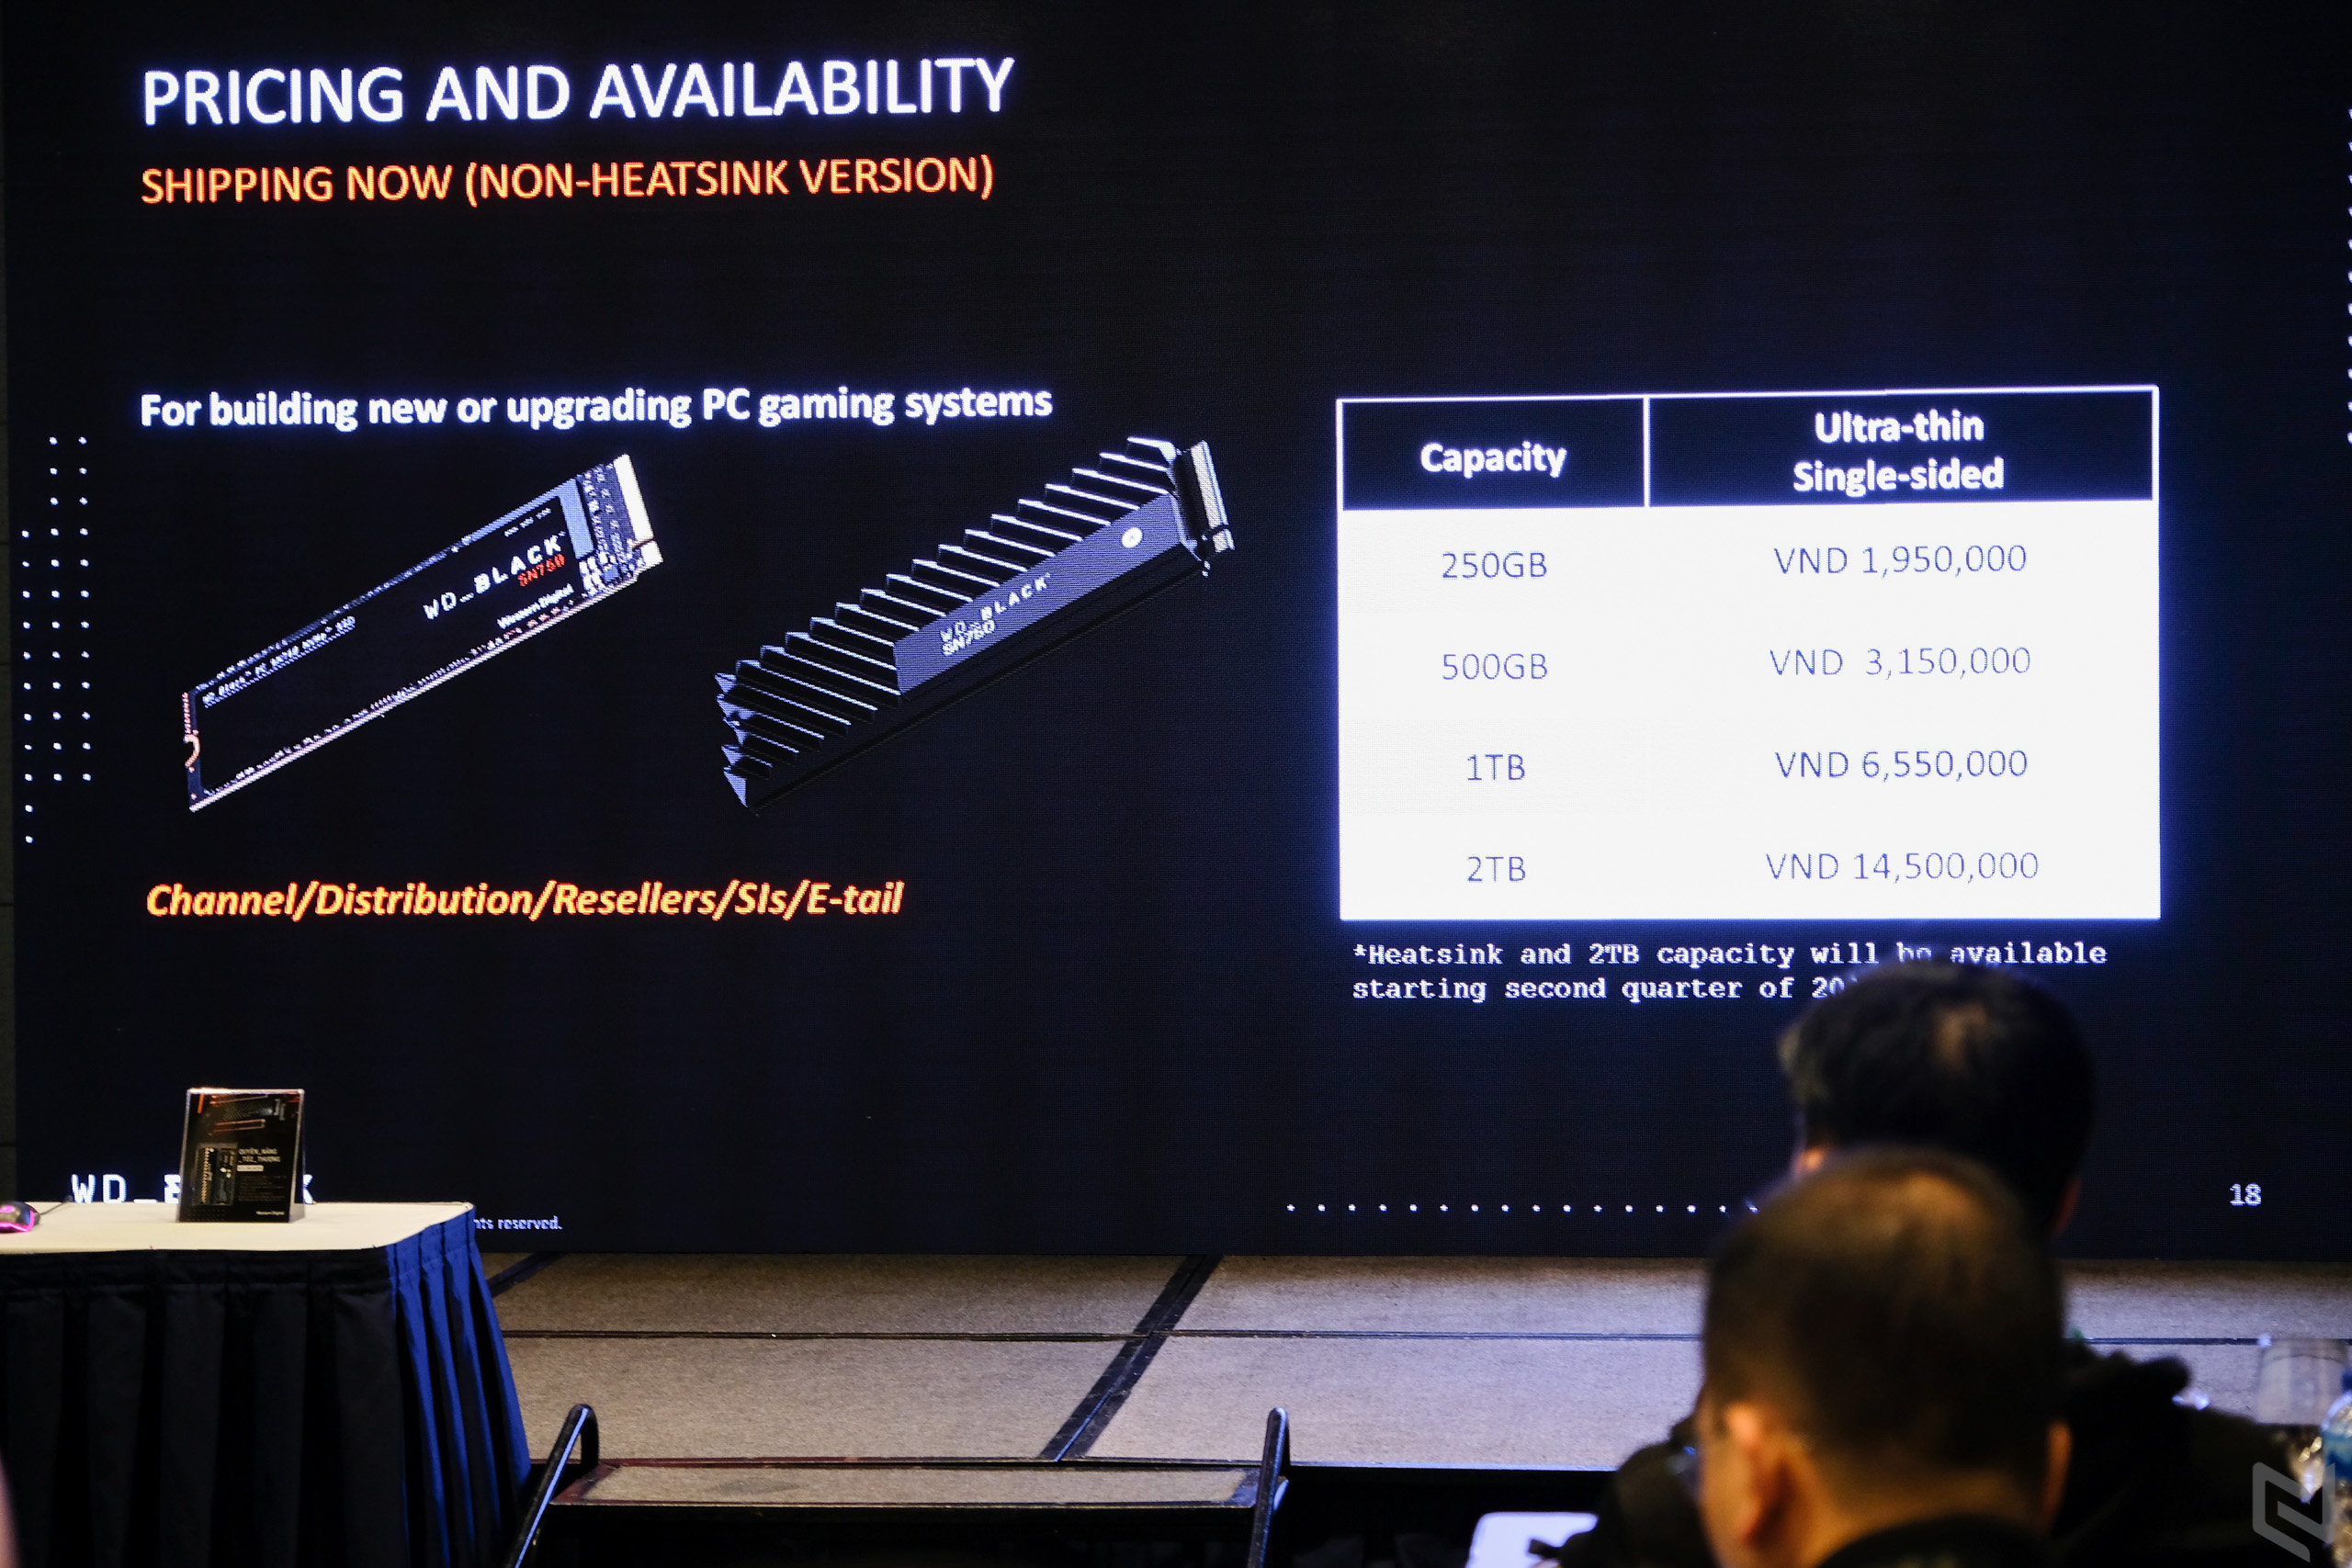 Western Digital ra mắt WD Black SN750 NVMe SSD: Ổ cứng M2 tốc độ cao hỗ trợ tối đa cho game thủ và streamer